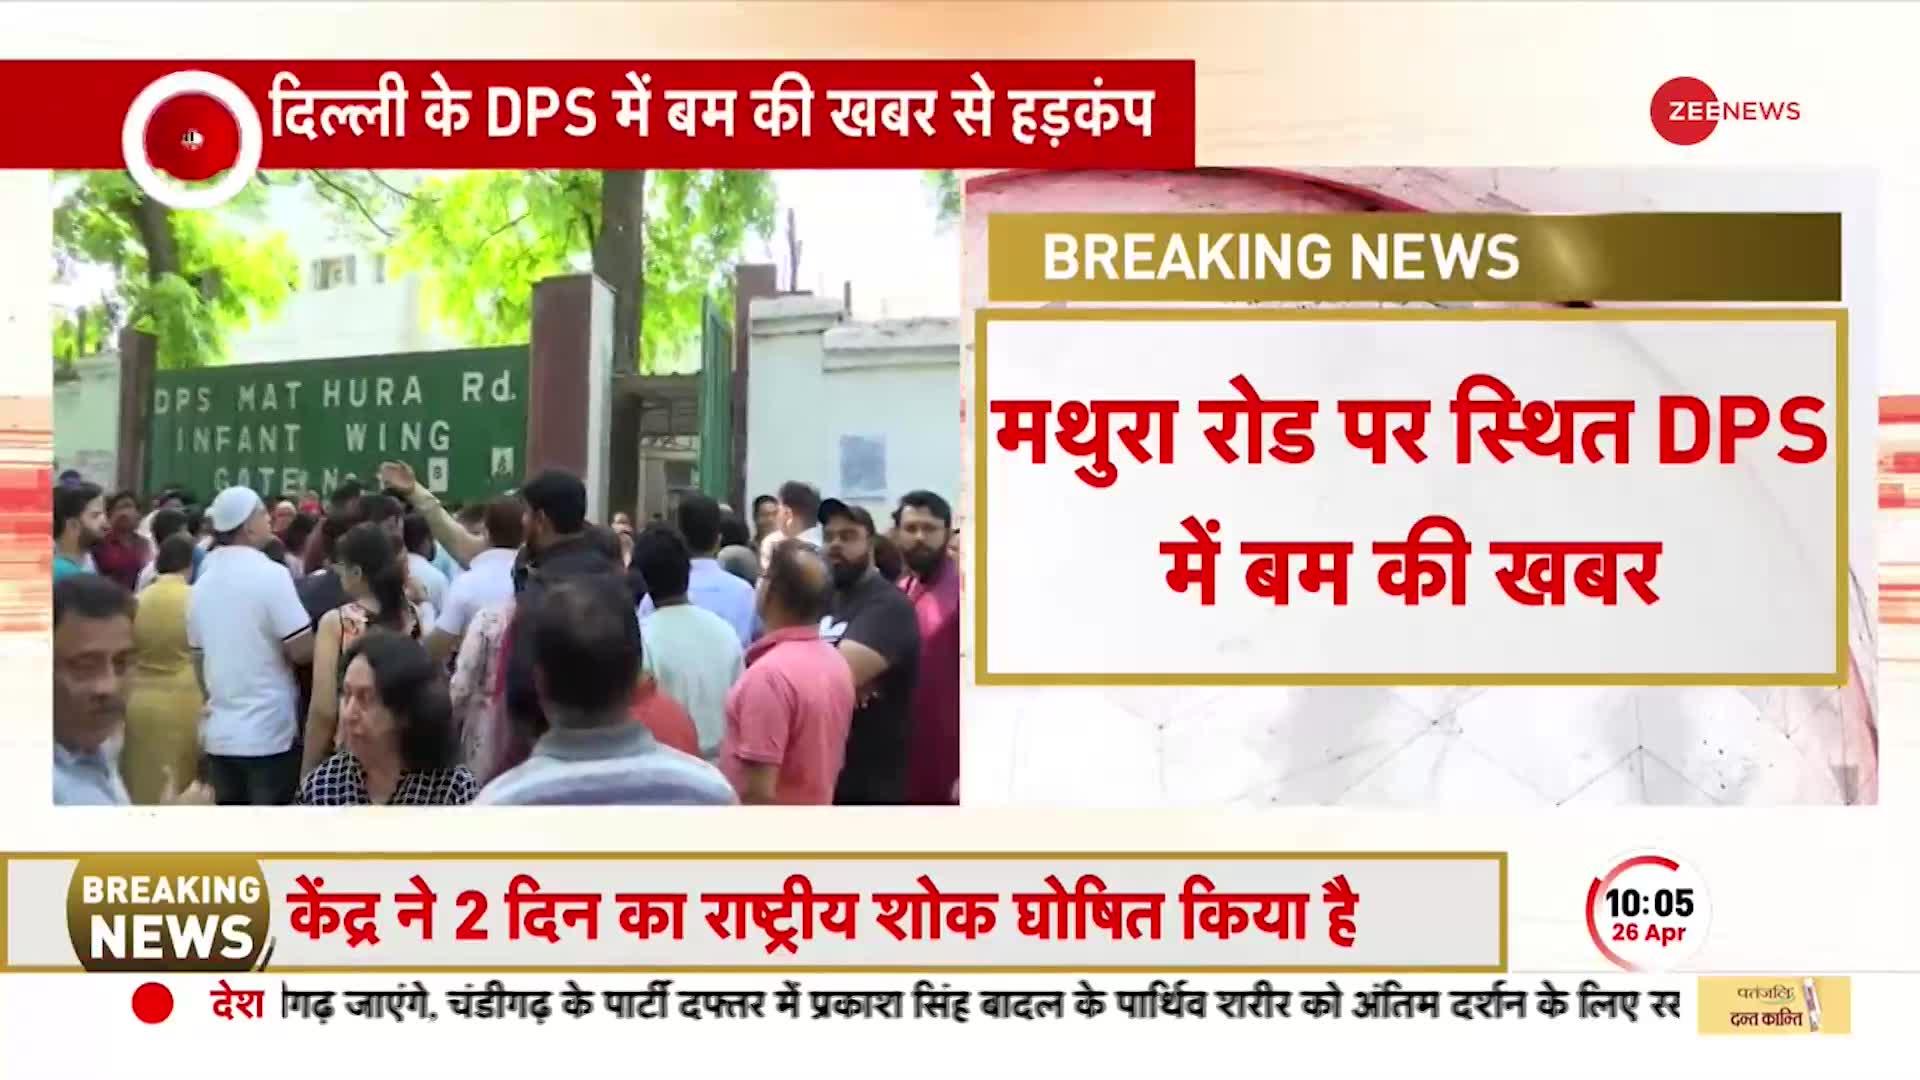 DPS School Bomb Threat: दिल्ली के डीपीएस स्कूल में बम की खबर से हड़कंप, जानें क्या है मौजूदा हालात